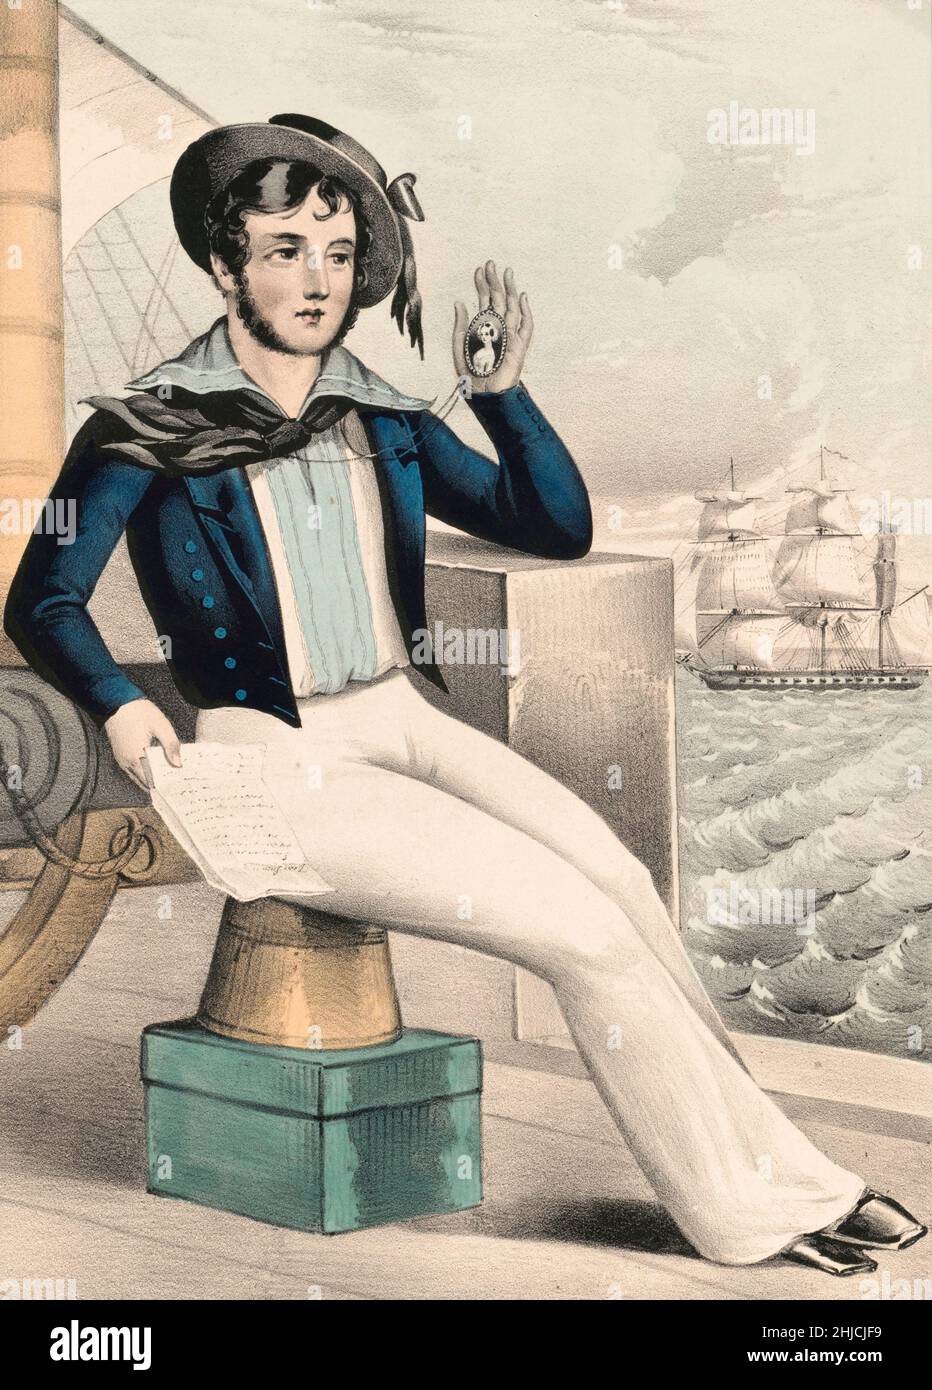 „der Seefahrer, der weit auf See ist.“ Ein amerikanischer Seemann in einem typischen Matrosenoutfit aus der Mitte des 19th. Jahrhunderts, mit einem Medaillon und einem Brief und einem Schiff im Hintergrund. Lithographie von Nathaniel Currier, 1845. Stockfoto